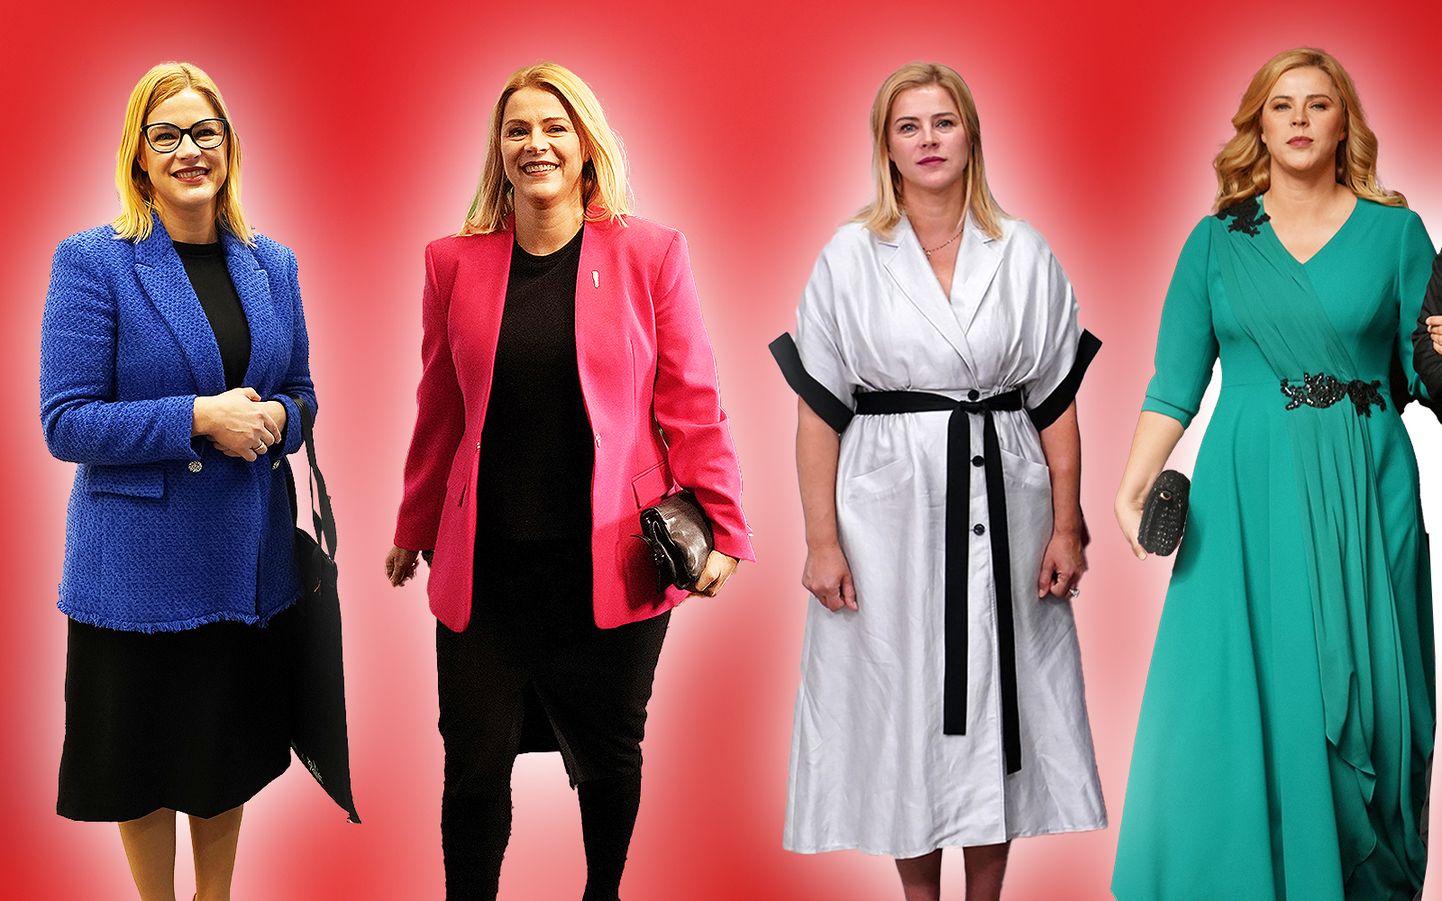 Премьер министр эвика силиня. Платья для полных женщин для похорон. Перезагрузка героини. Образы одежды героинь из перезагрузки на ТНТ. Счастливый случай одежда героини.